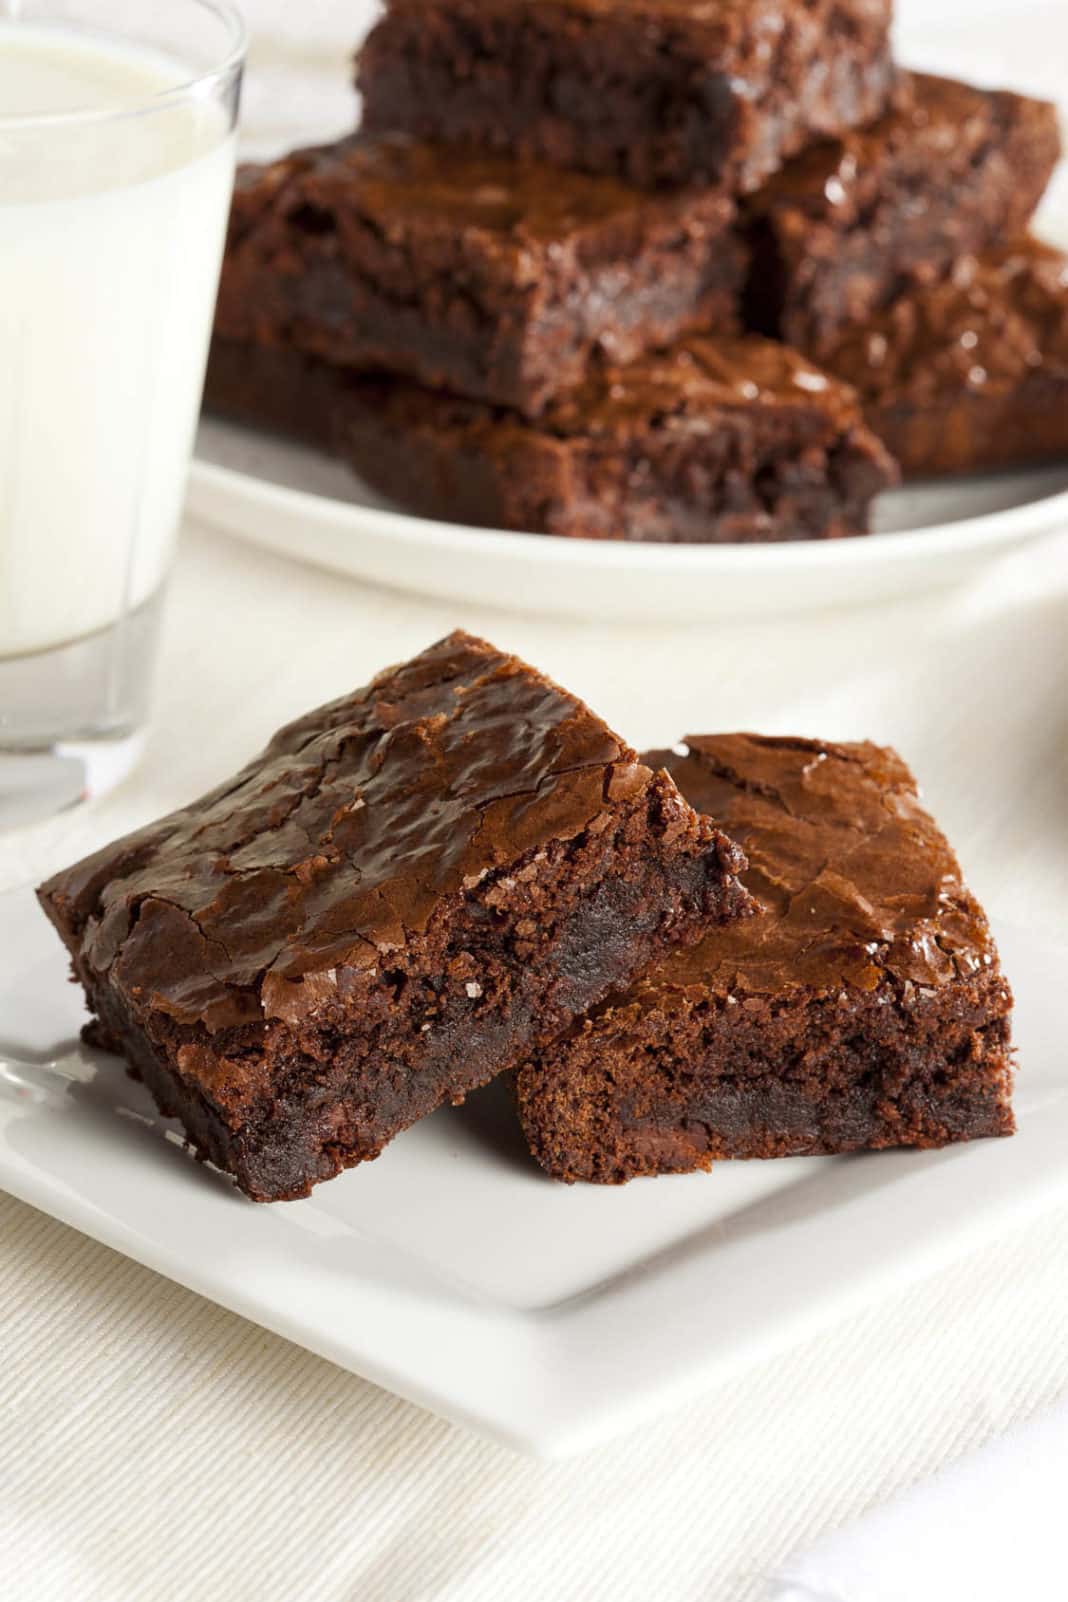 Descubre cómo hacer el brownie perfecto en 4 pasos y qué ocurre al reemplazar ingredientes